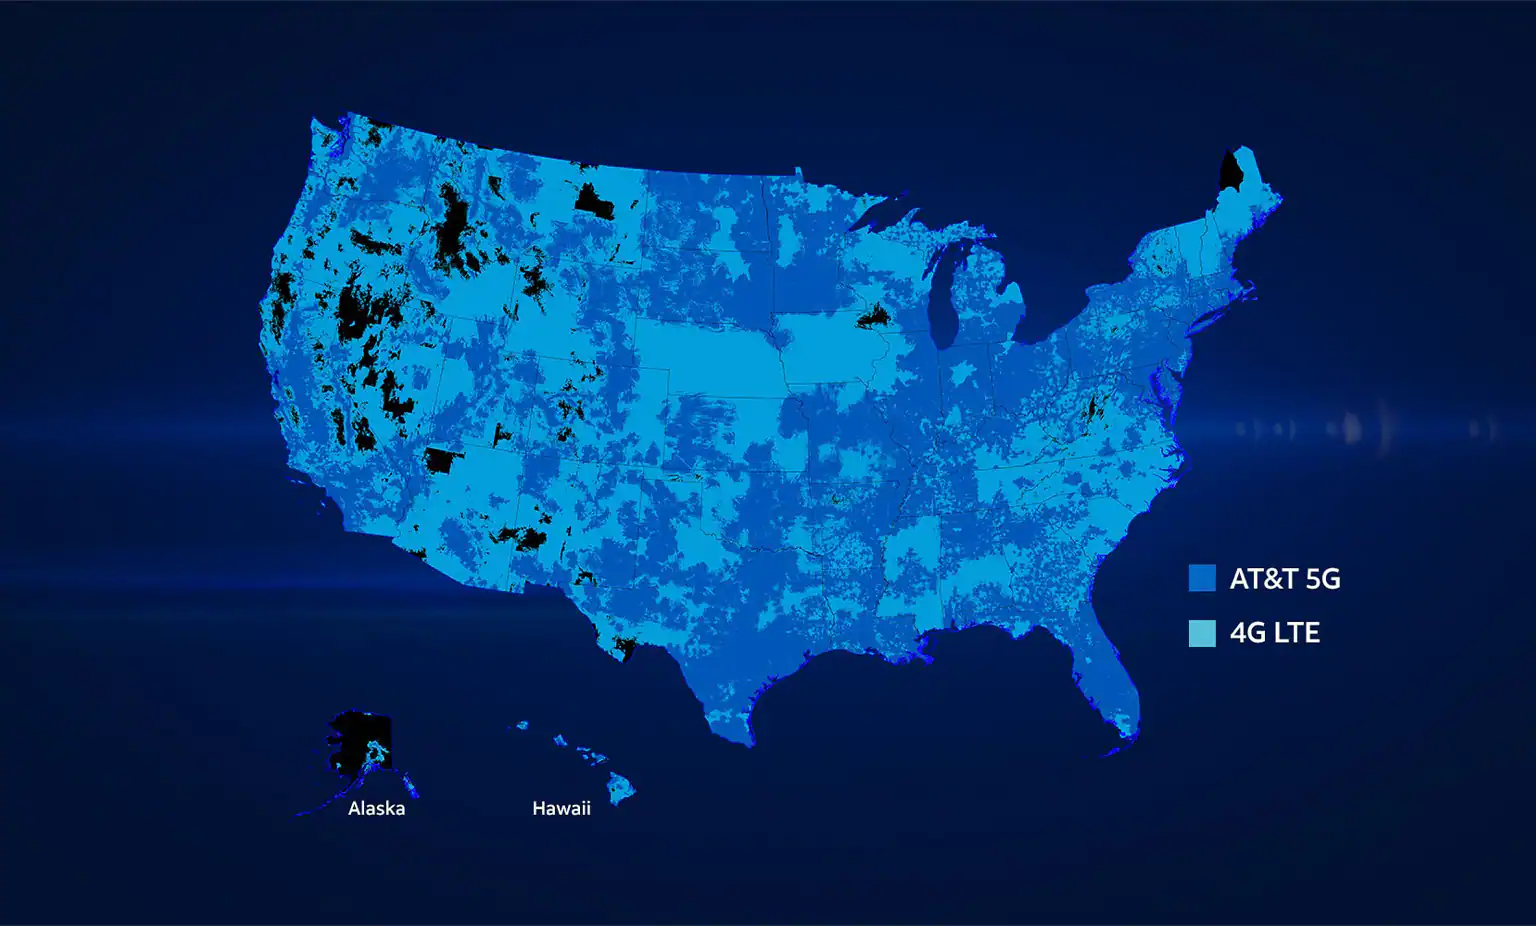 Um mapa de cobertura dos Estados Unidos mostrando AT&T 5G em azul claro e 4G LTE em azul escuro, com inserções no Alasca e no Havaí.